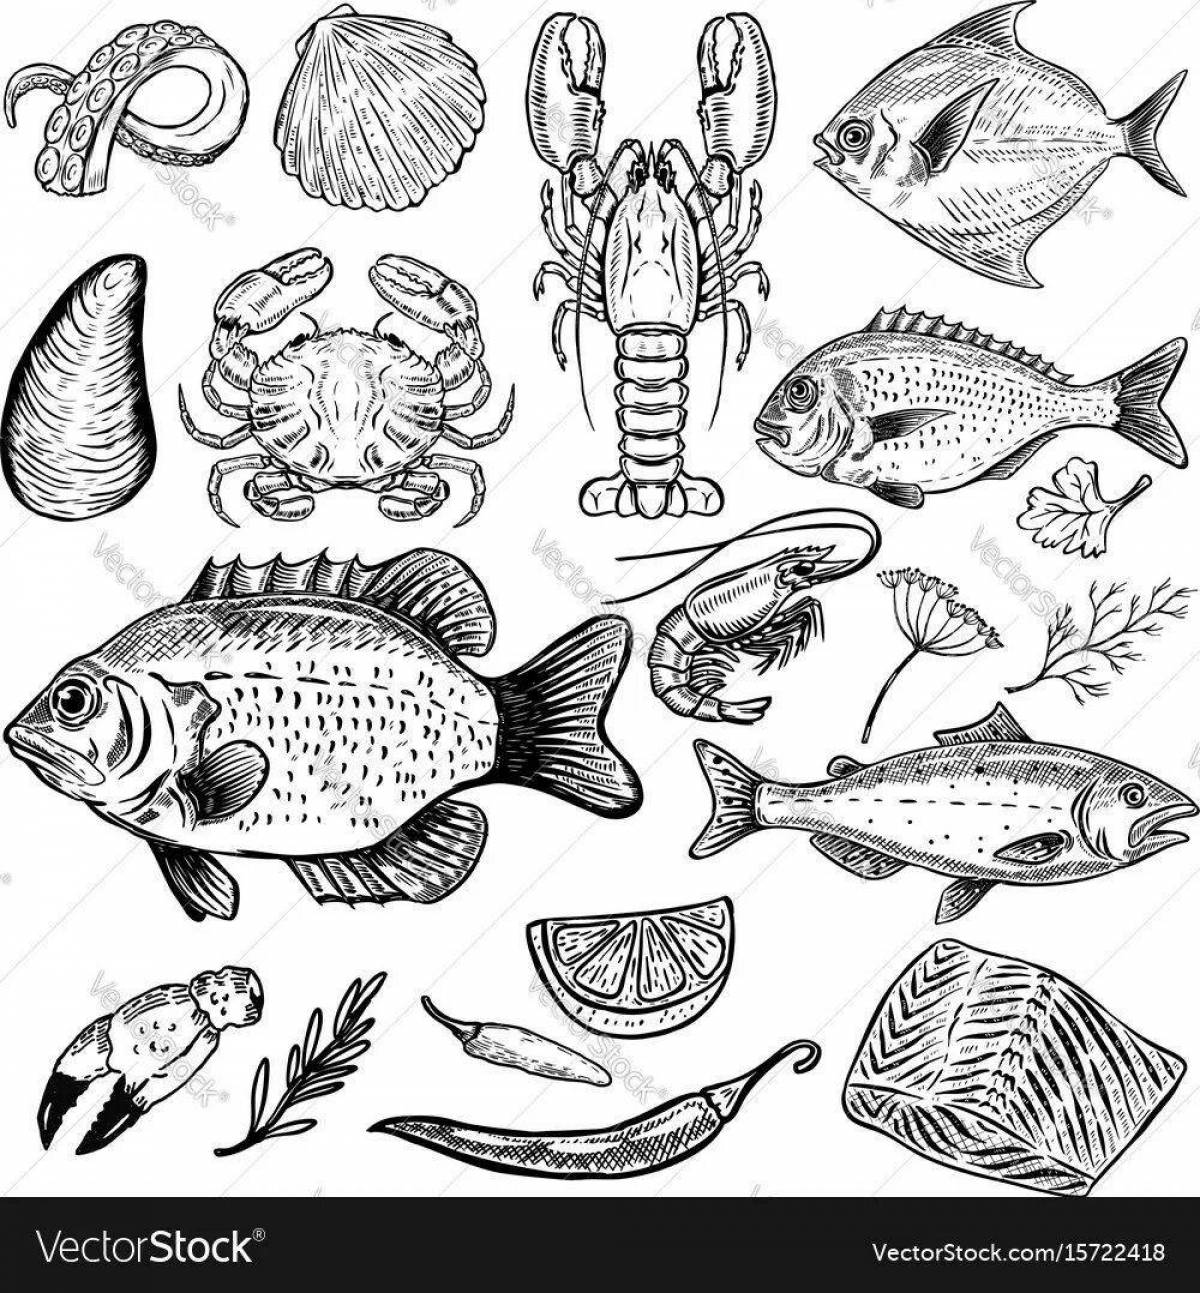 Cute fish coloring book